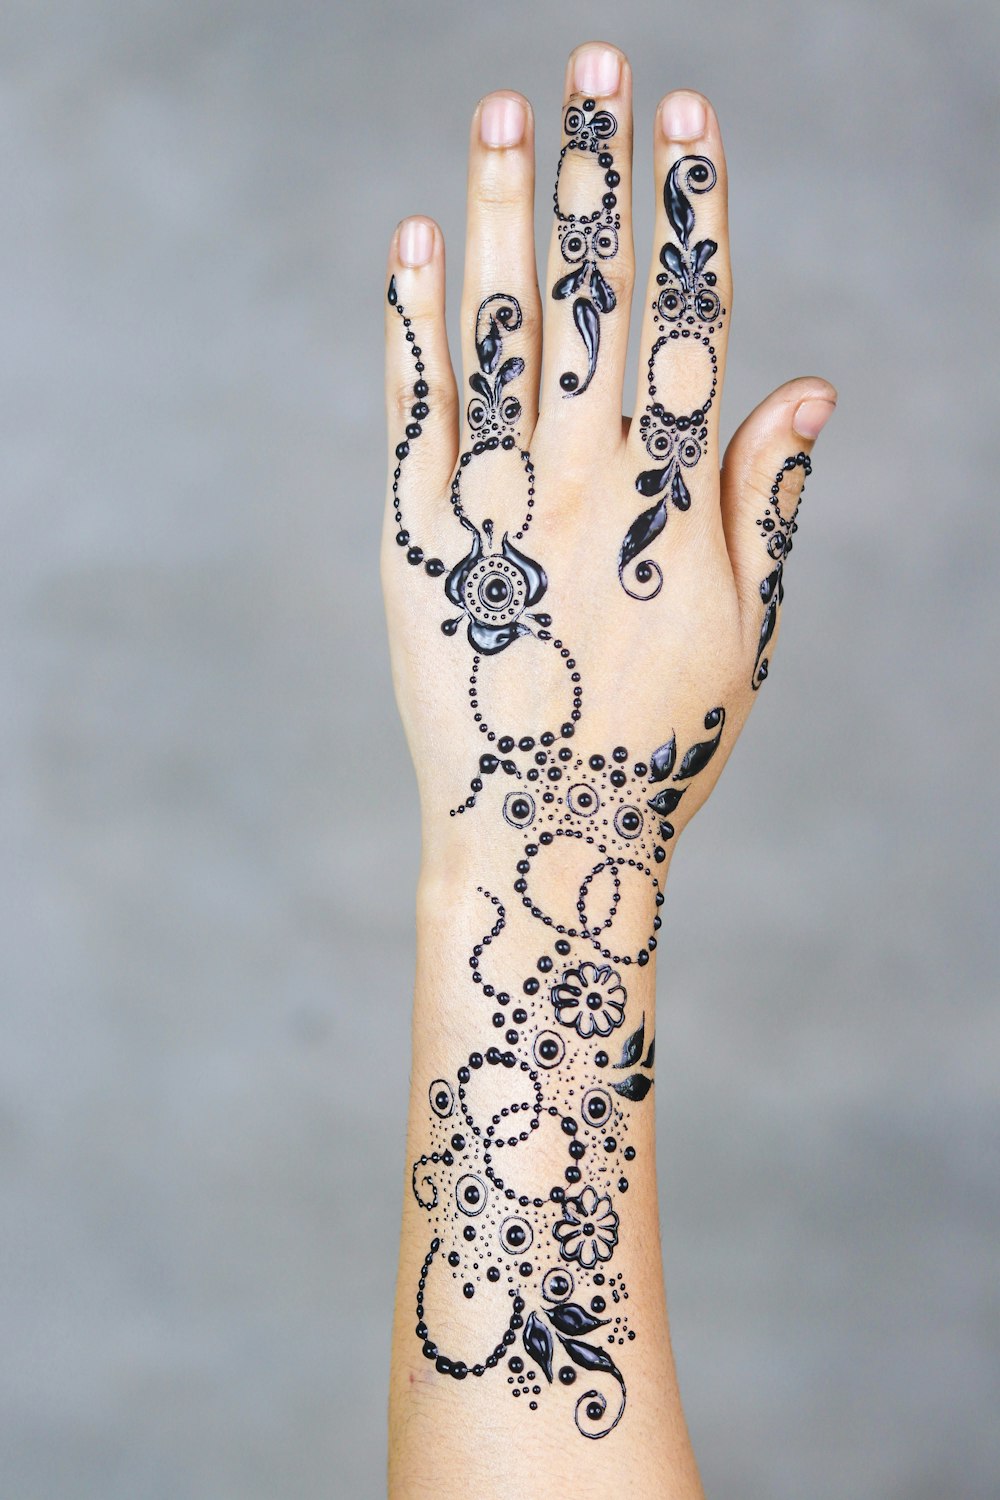 Black Mehndi Tattoo Photo Free Hand Image On Unsplash